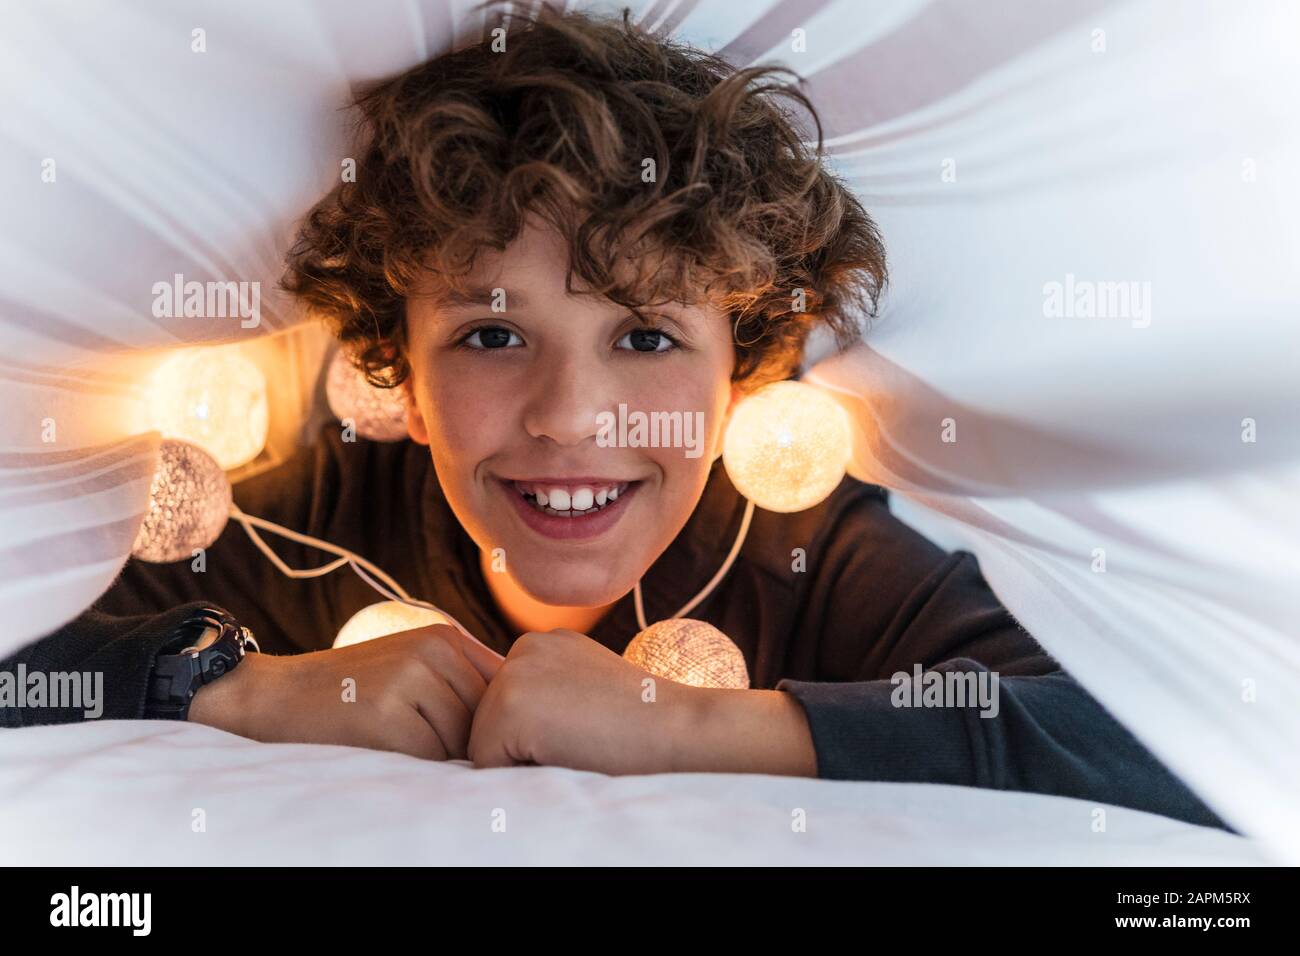 Ritratto di ragazzo felice con una catena di luci sotto il copriletto Foto Stock